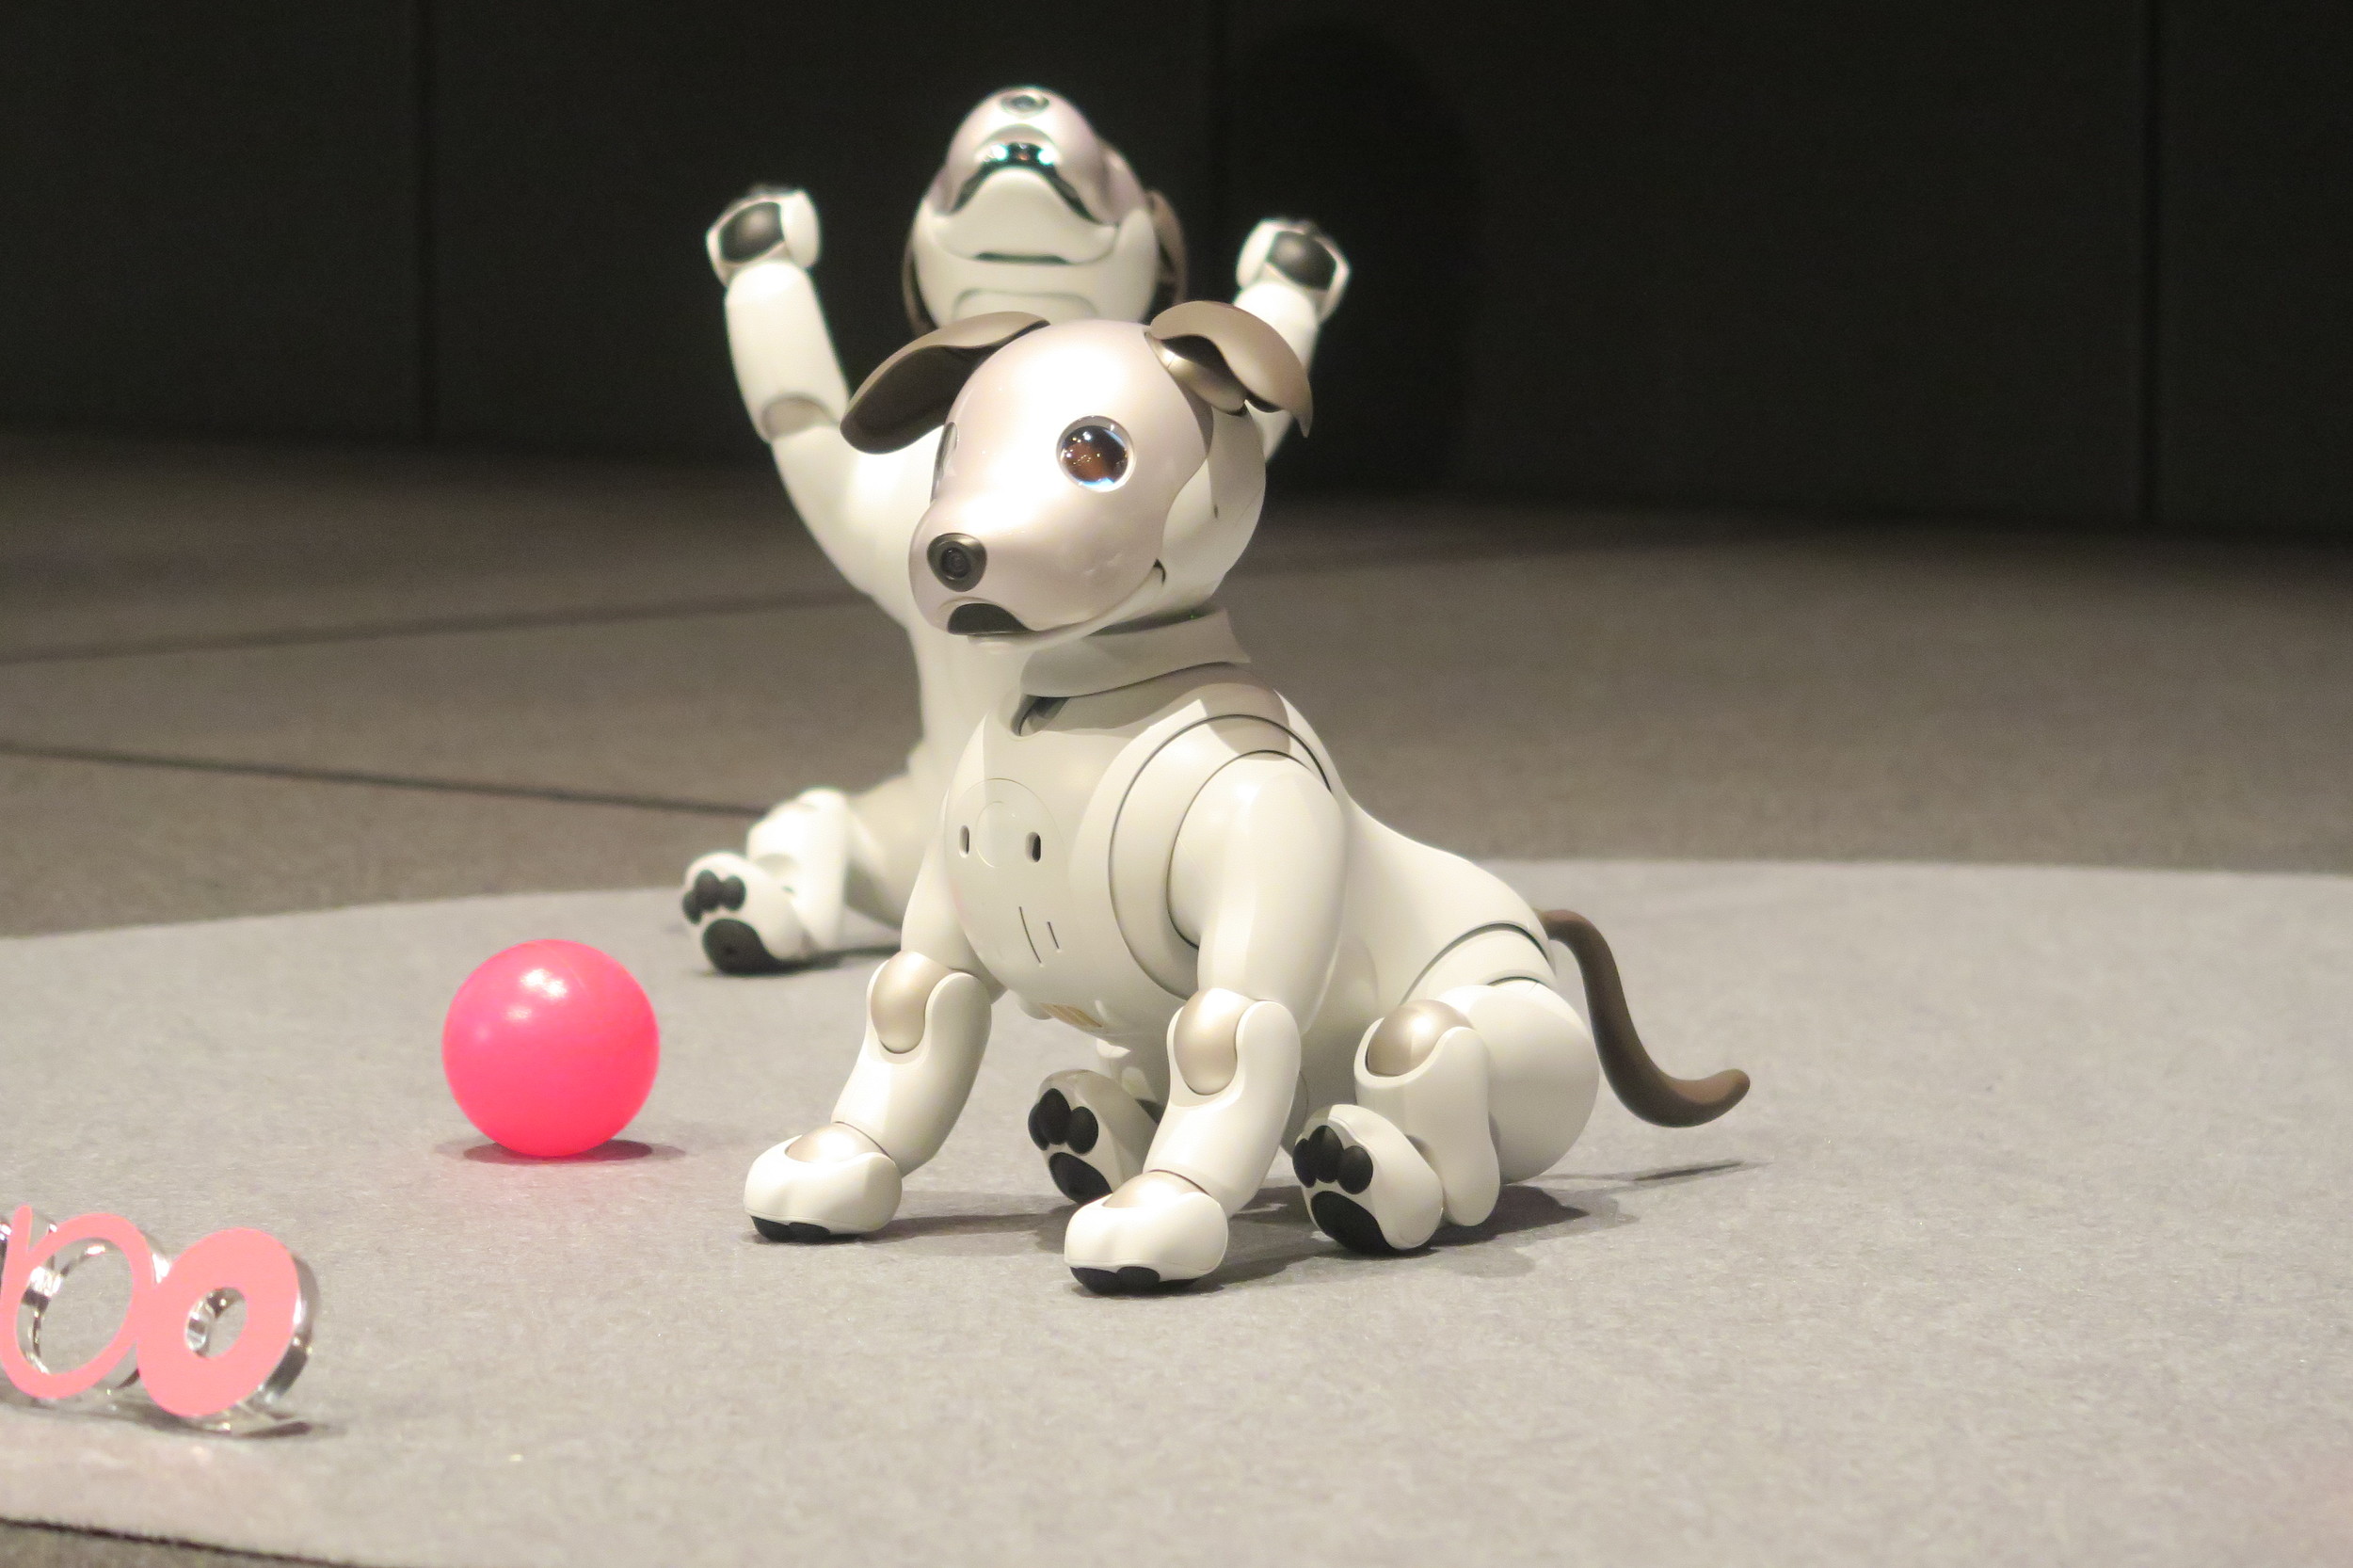 ソニーの犬型ロボット「aibo」と触れ合える。渋谷モディで1月11日から - Engadget 日本版